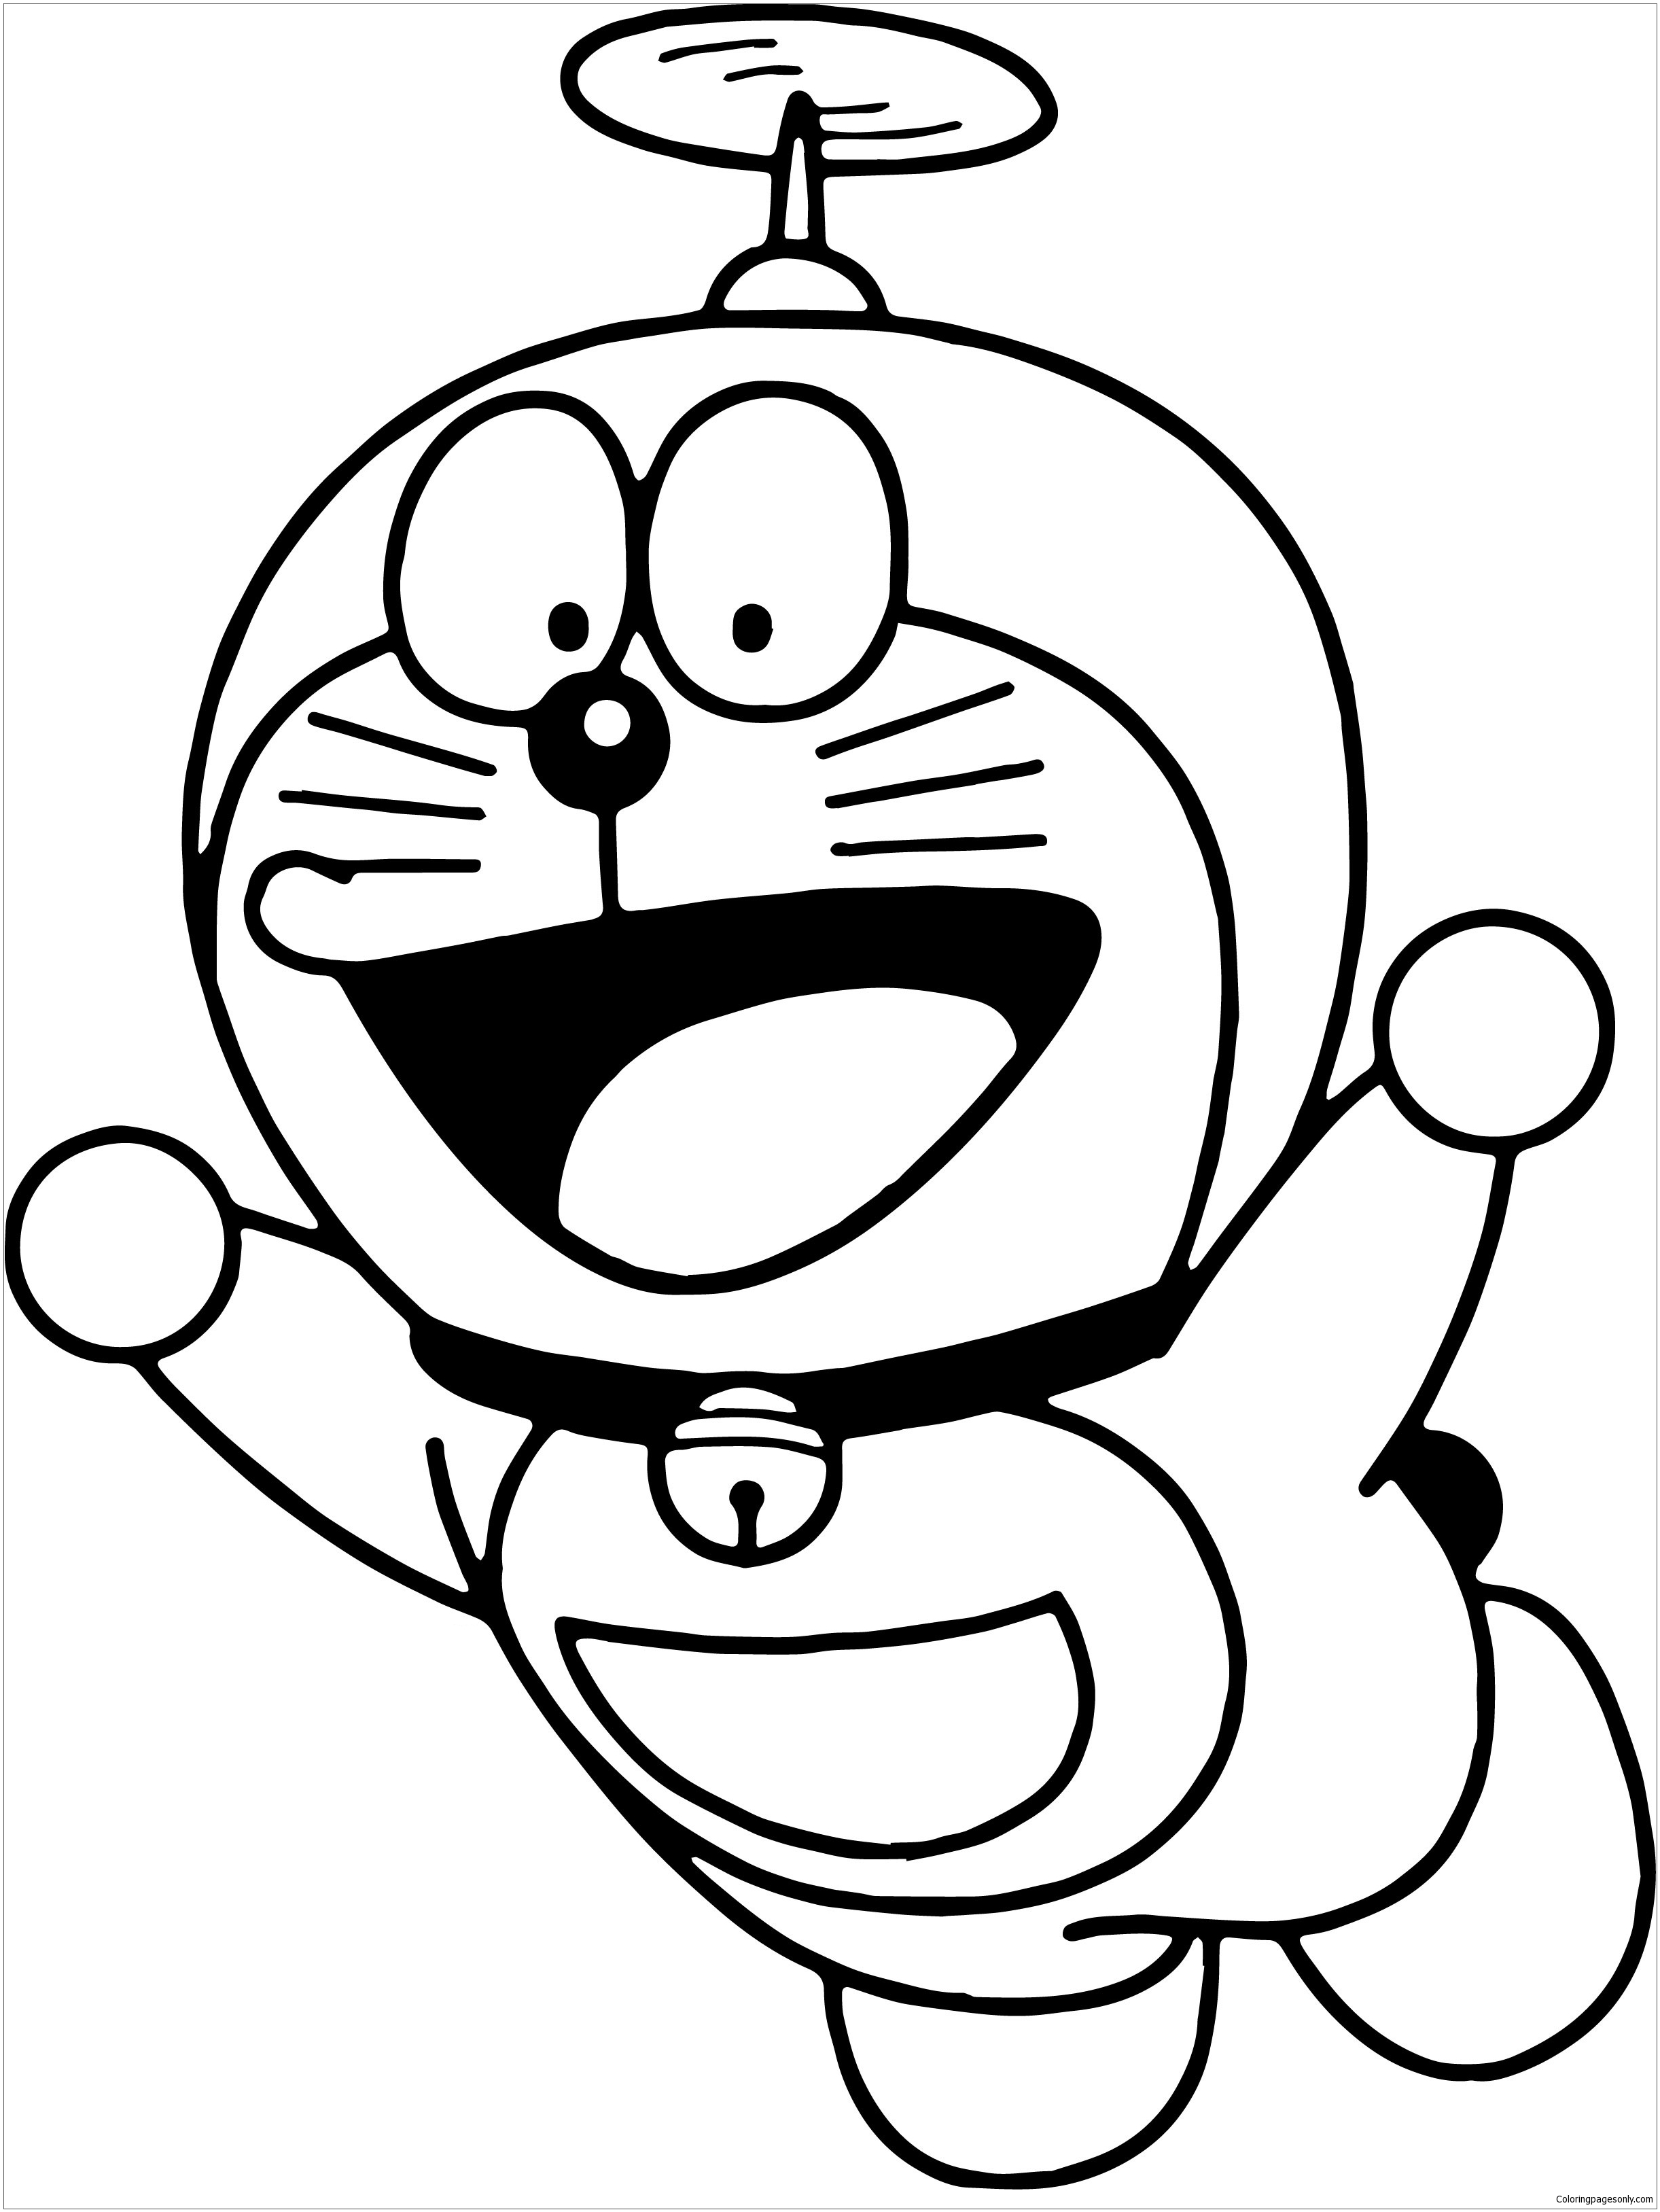 Fly Bratz Doraemon Coloring Pages - Doraemon Coloring Pages - Coloring